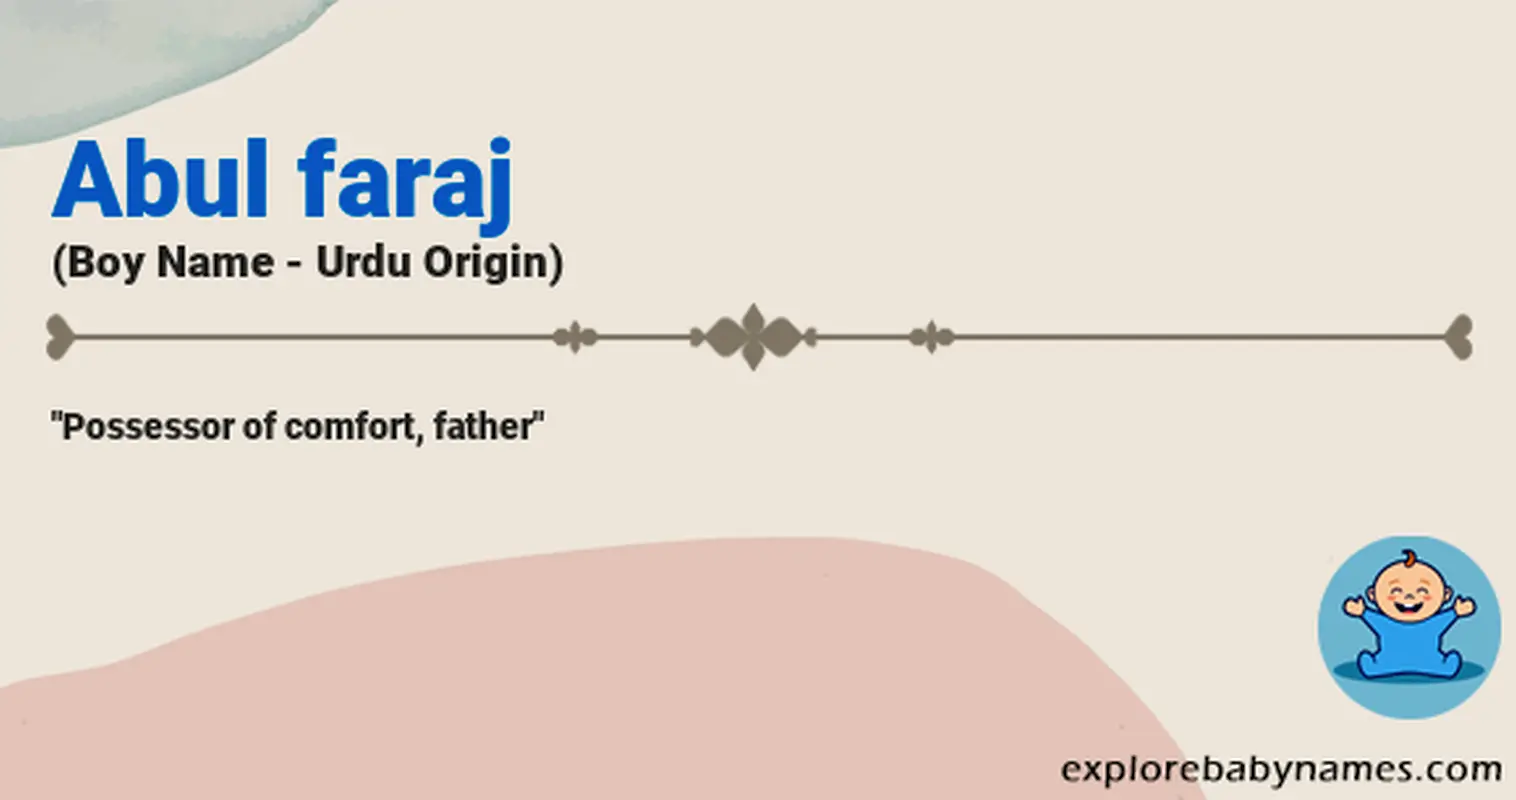 Meaning of Abul faraj